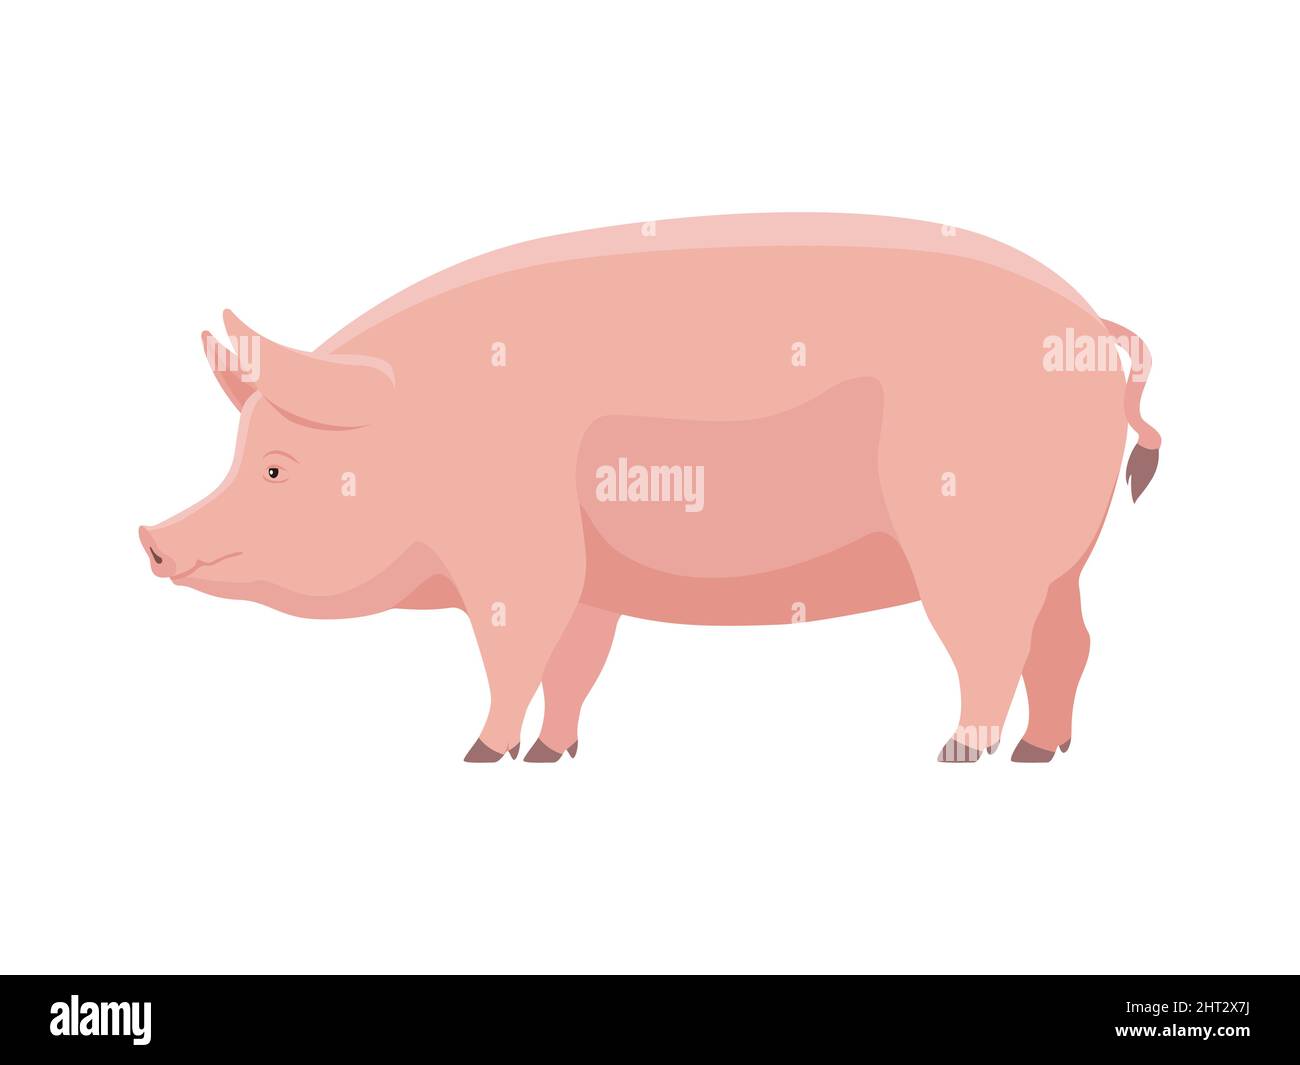 Maiale grasso grande. Illustrazione vettoriale di maiale grasso grande isolato su sfondo bianco. Stile piatto, vista laterale. Illustrazione Vettoriale